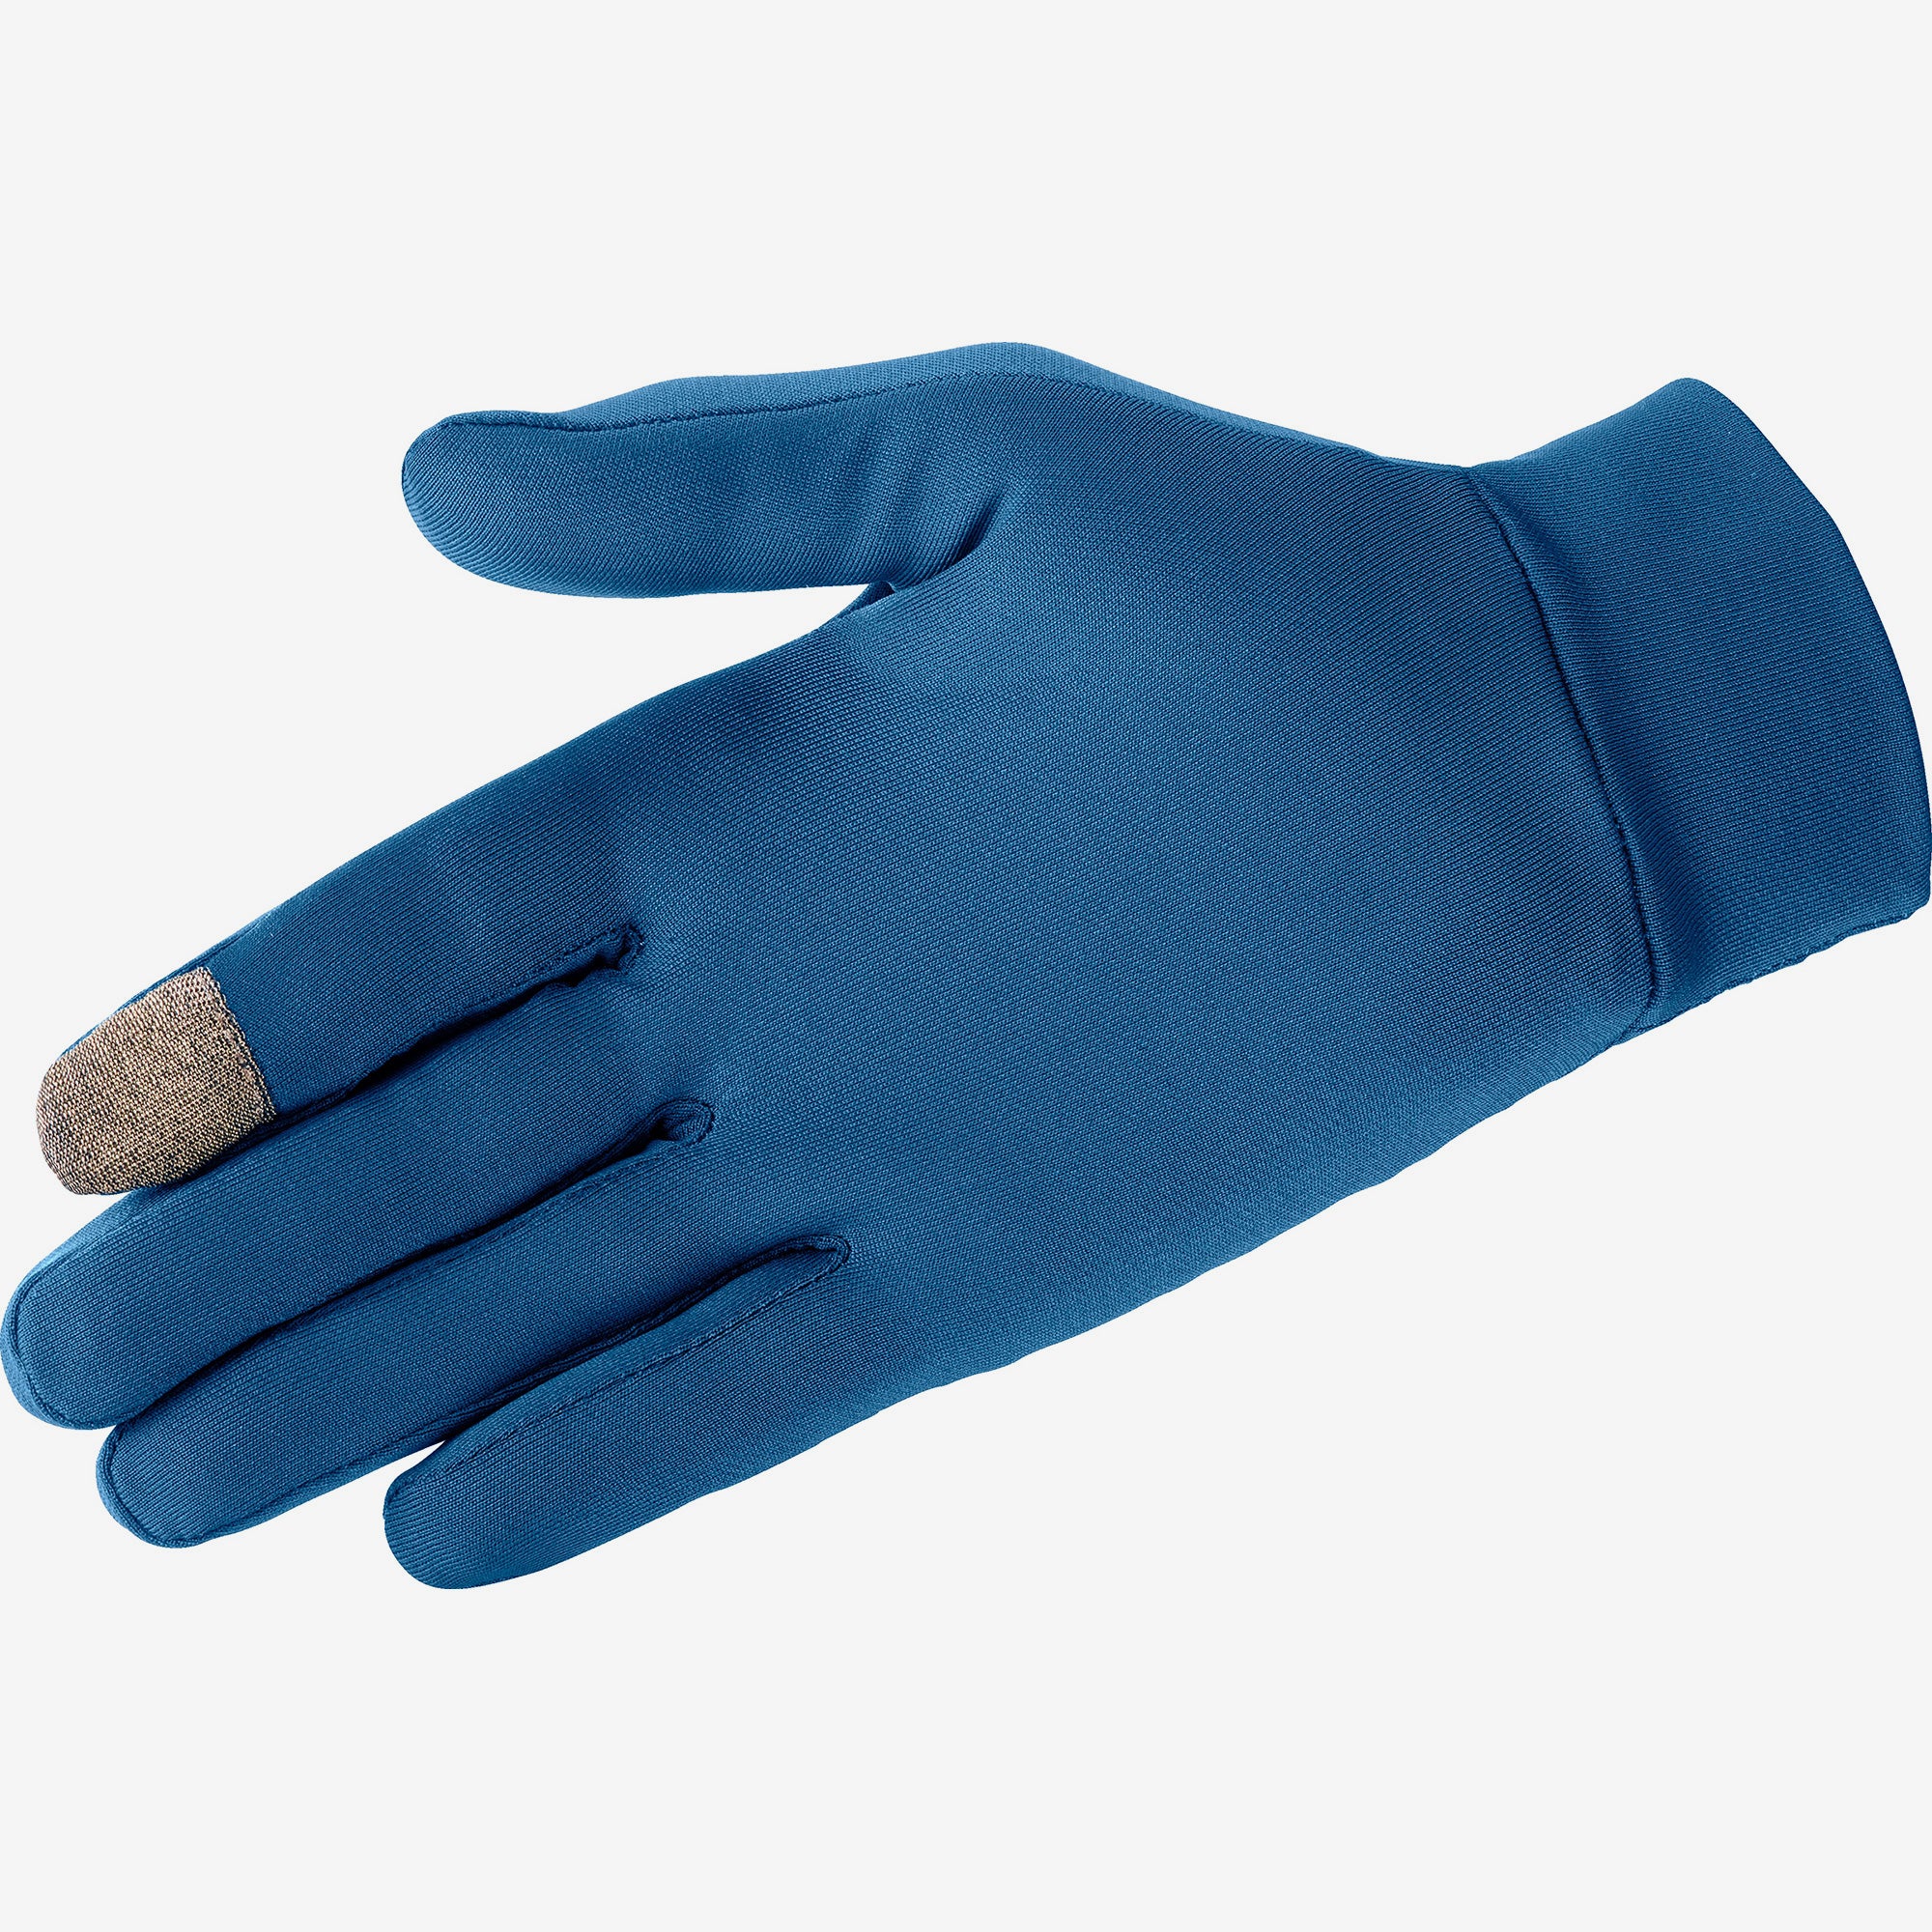 SALOMON Agile Warm Gloves - Unisex